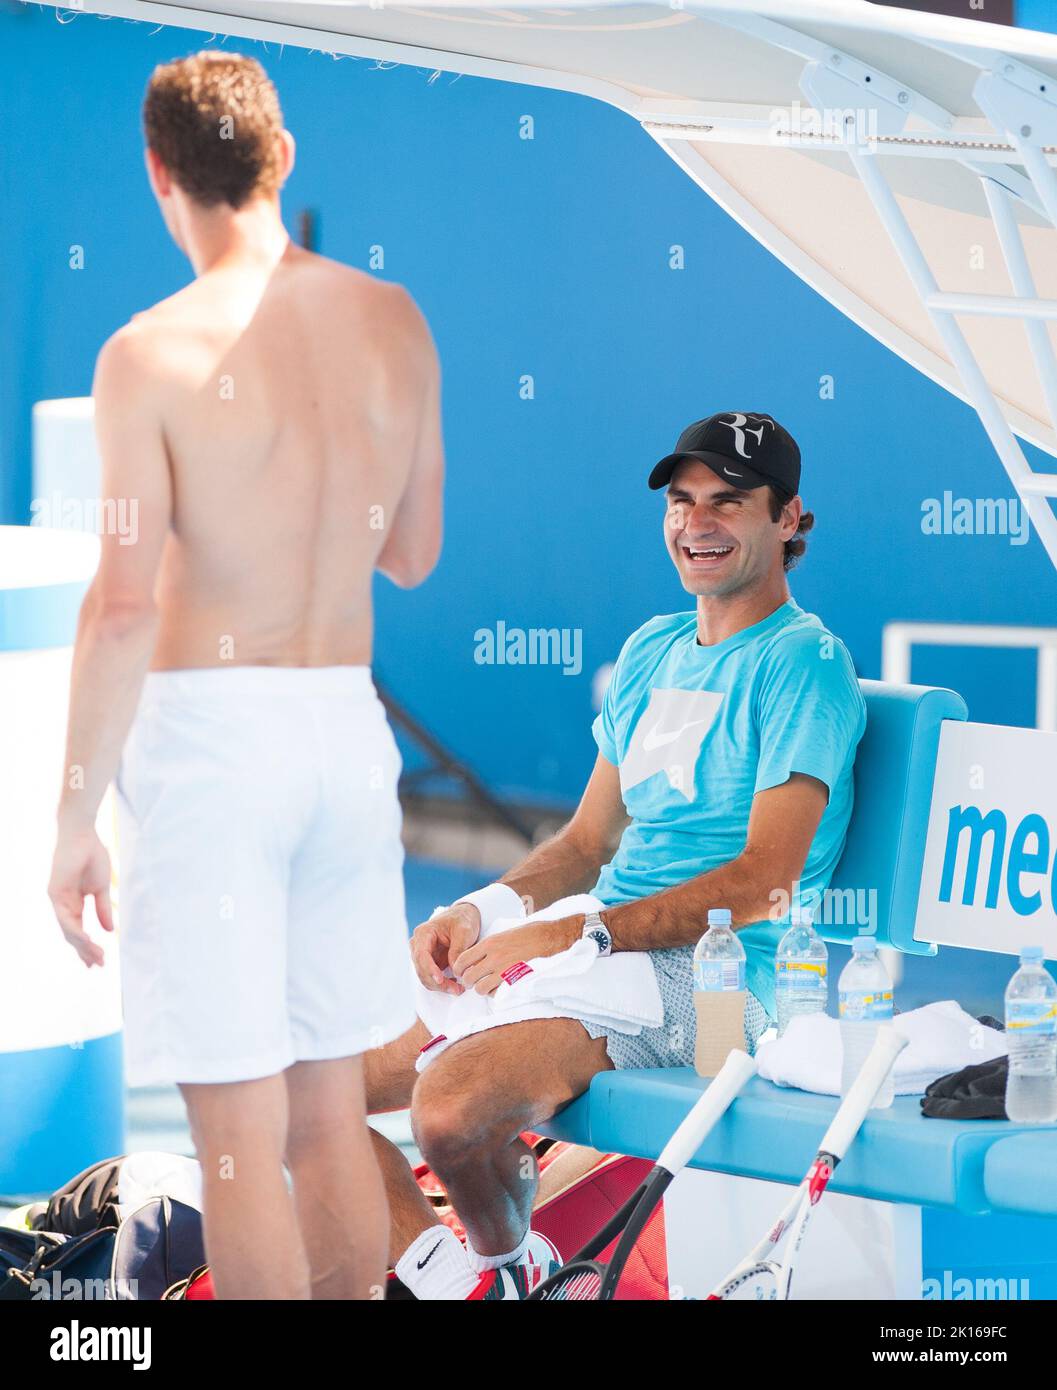 Roger Federer de Suiza casi puede tomarse un día libre mientras espera las semifinales en el Abierto de Australia de 2014 - pero todavía se mete en un poco de práctica de golpes y se ríe con un compañero de entrenamiento en el Parque Olímpico de Melbourne. Foto de stock